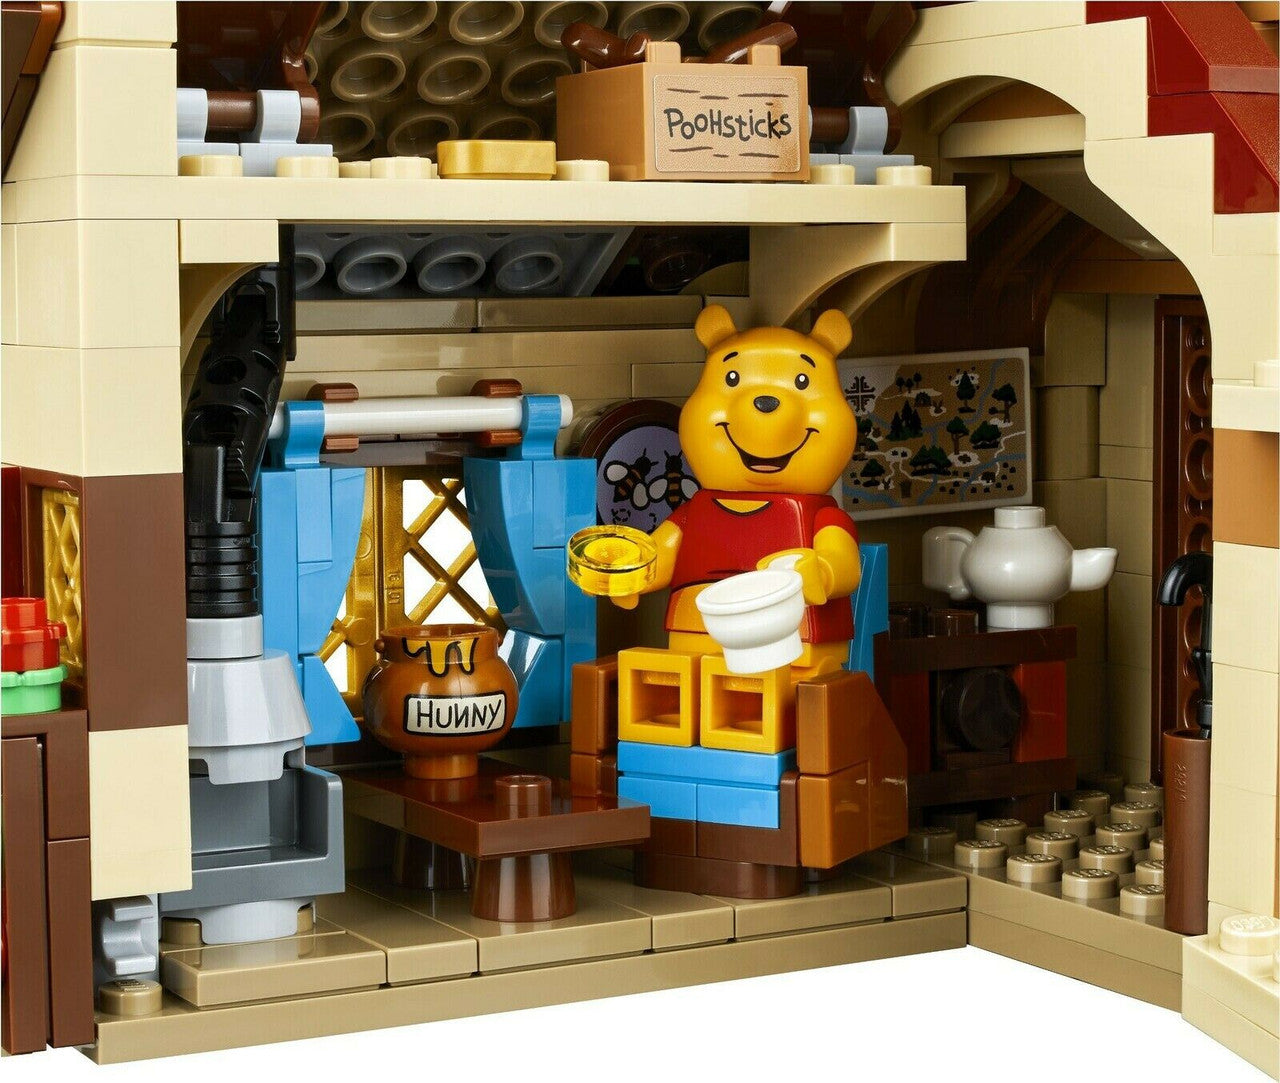 LEGO Ideas Winnie the Pooh 21326